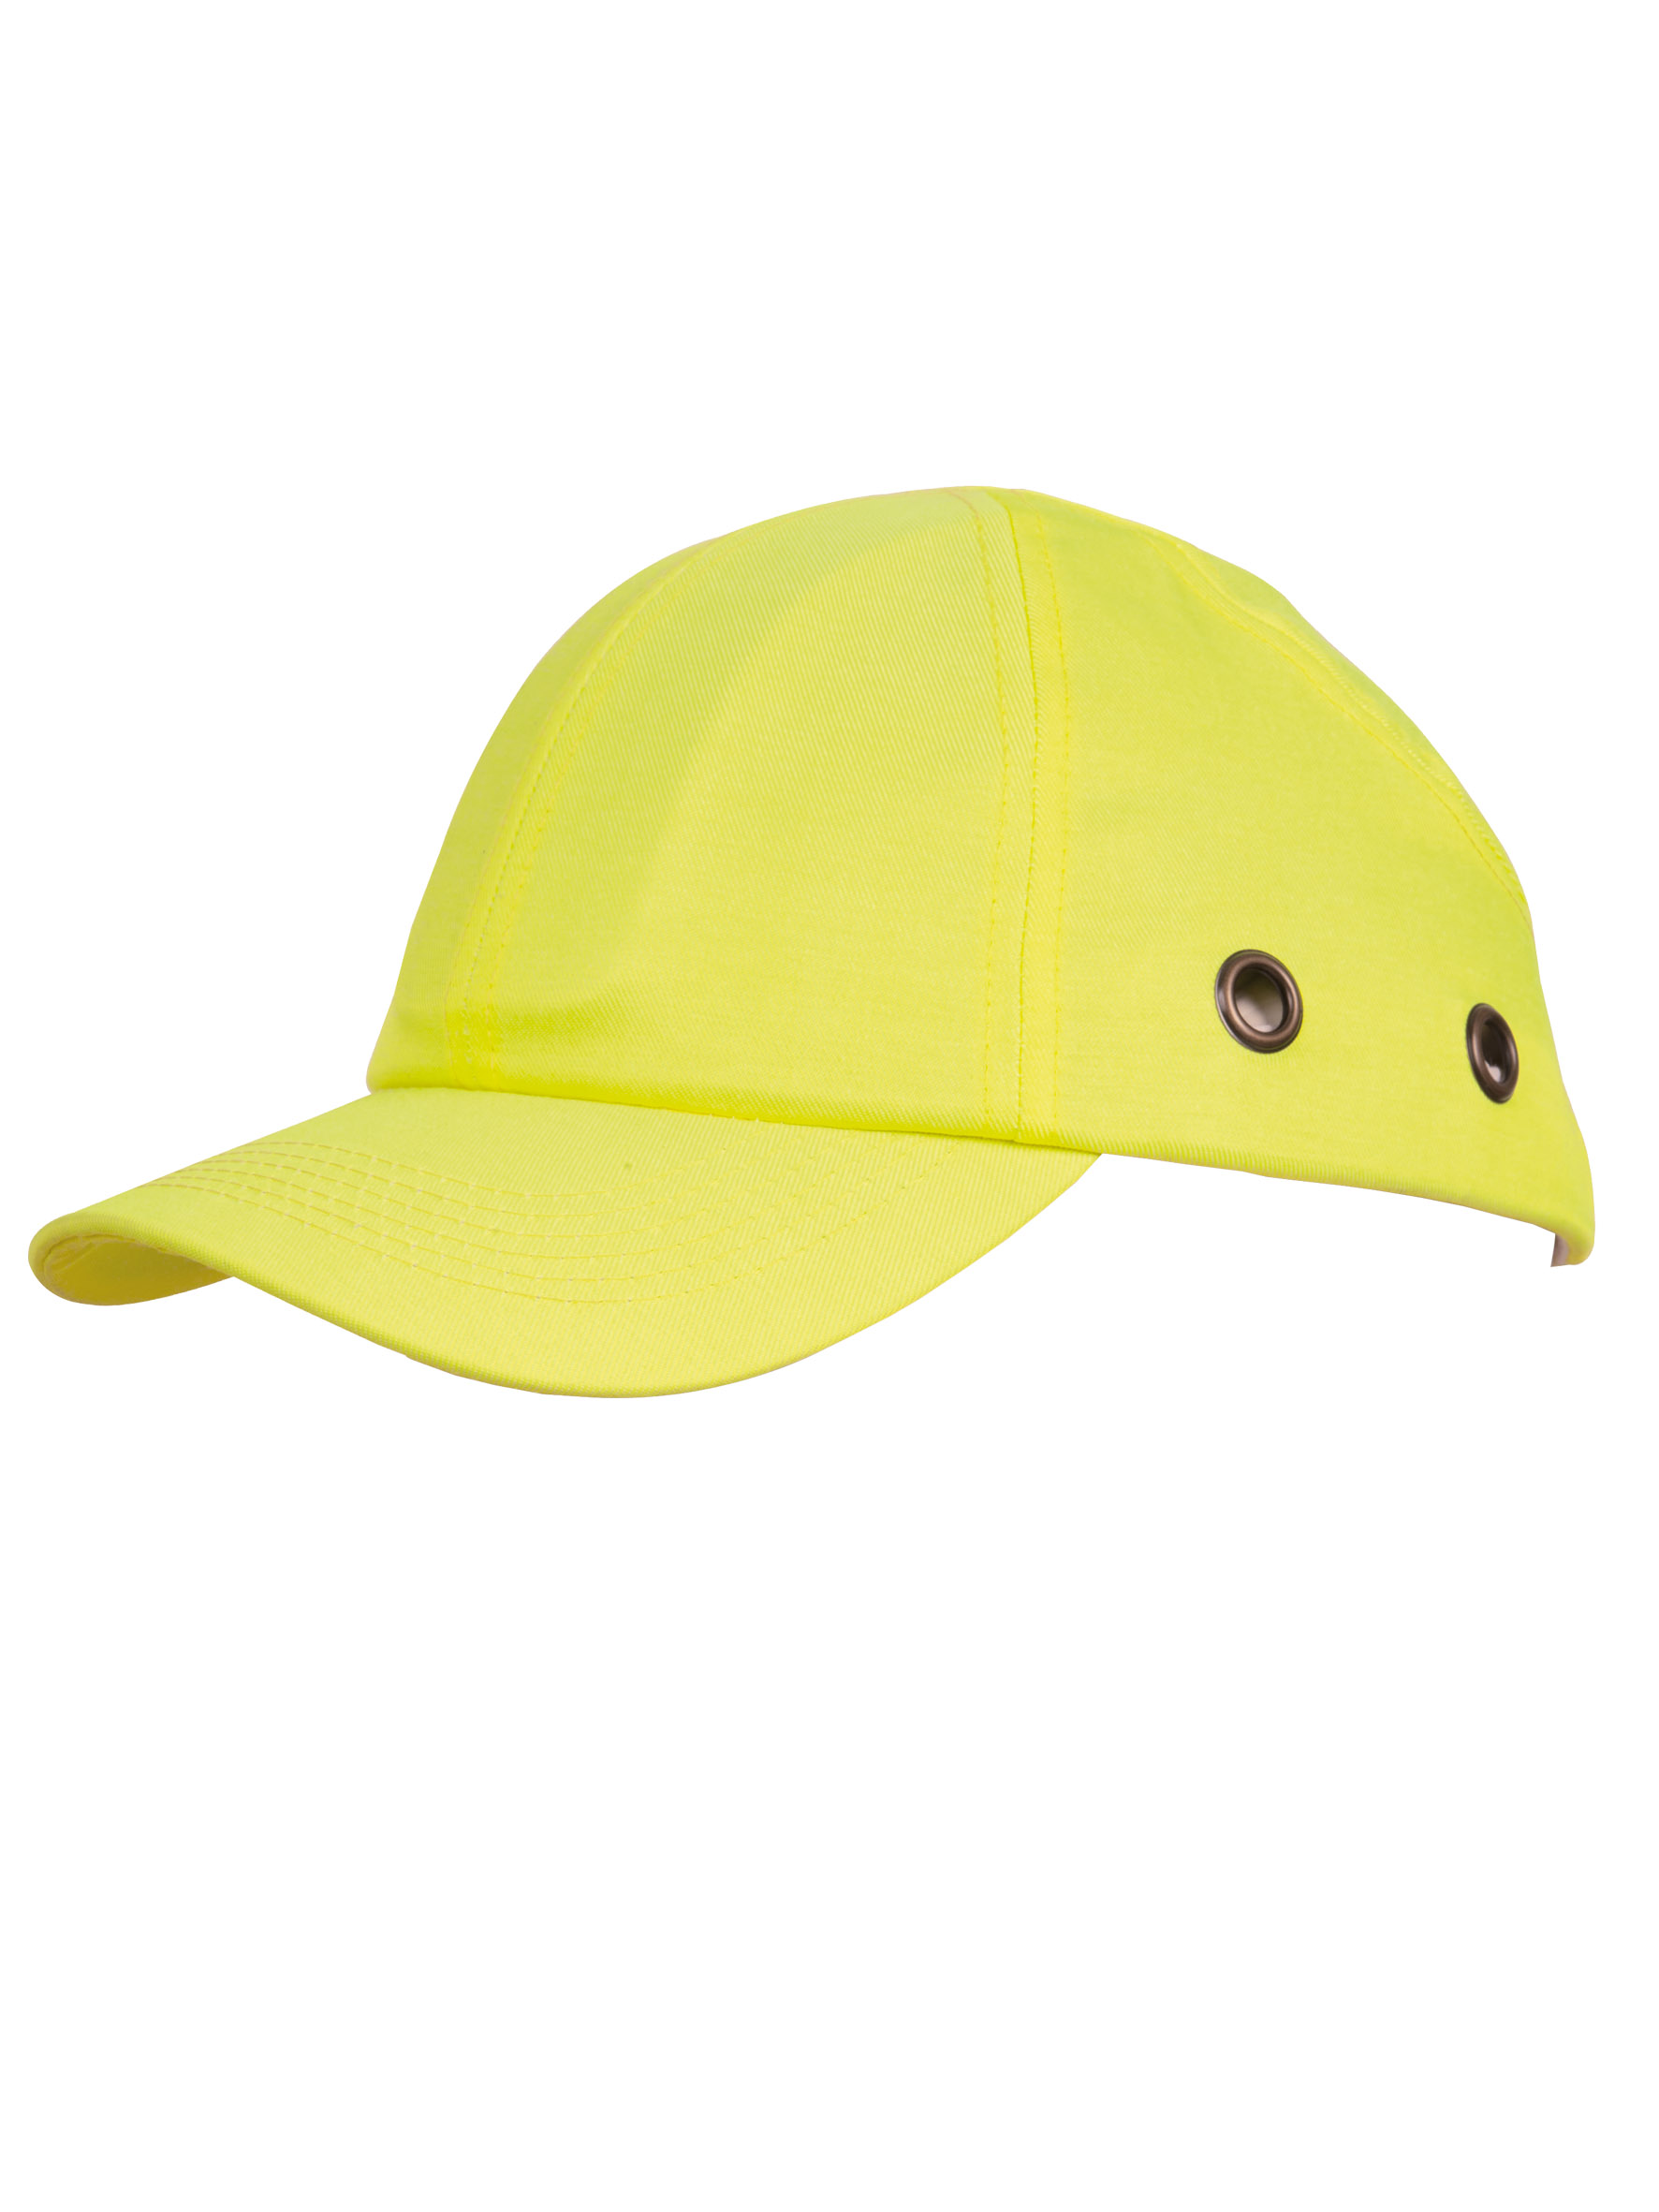 Housse de casque réfléchissante standard (jaune, Polyester, 18g